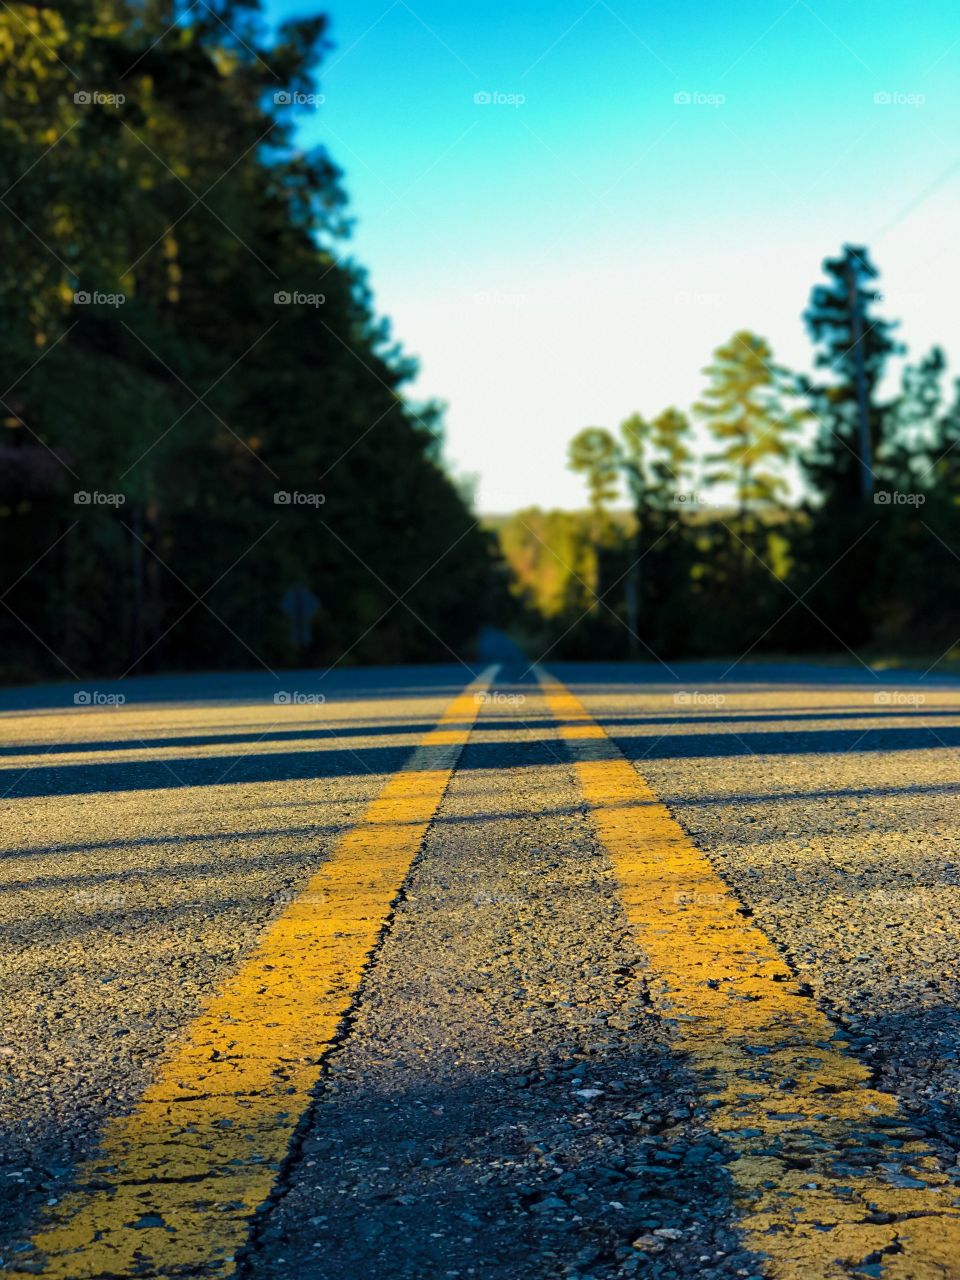 Back roads 